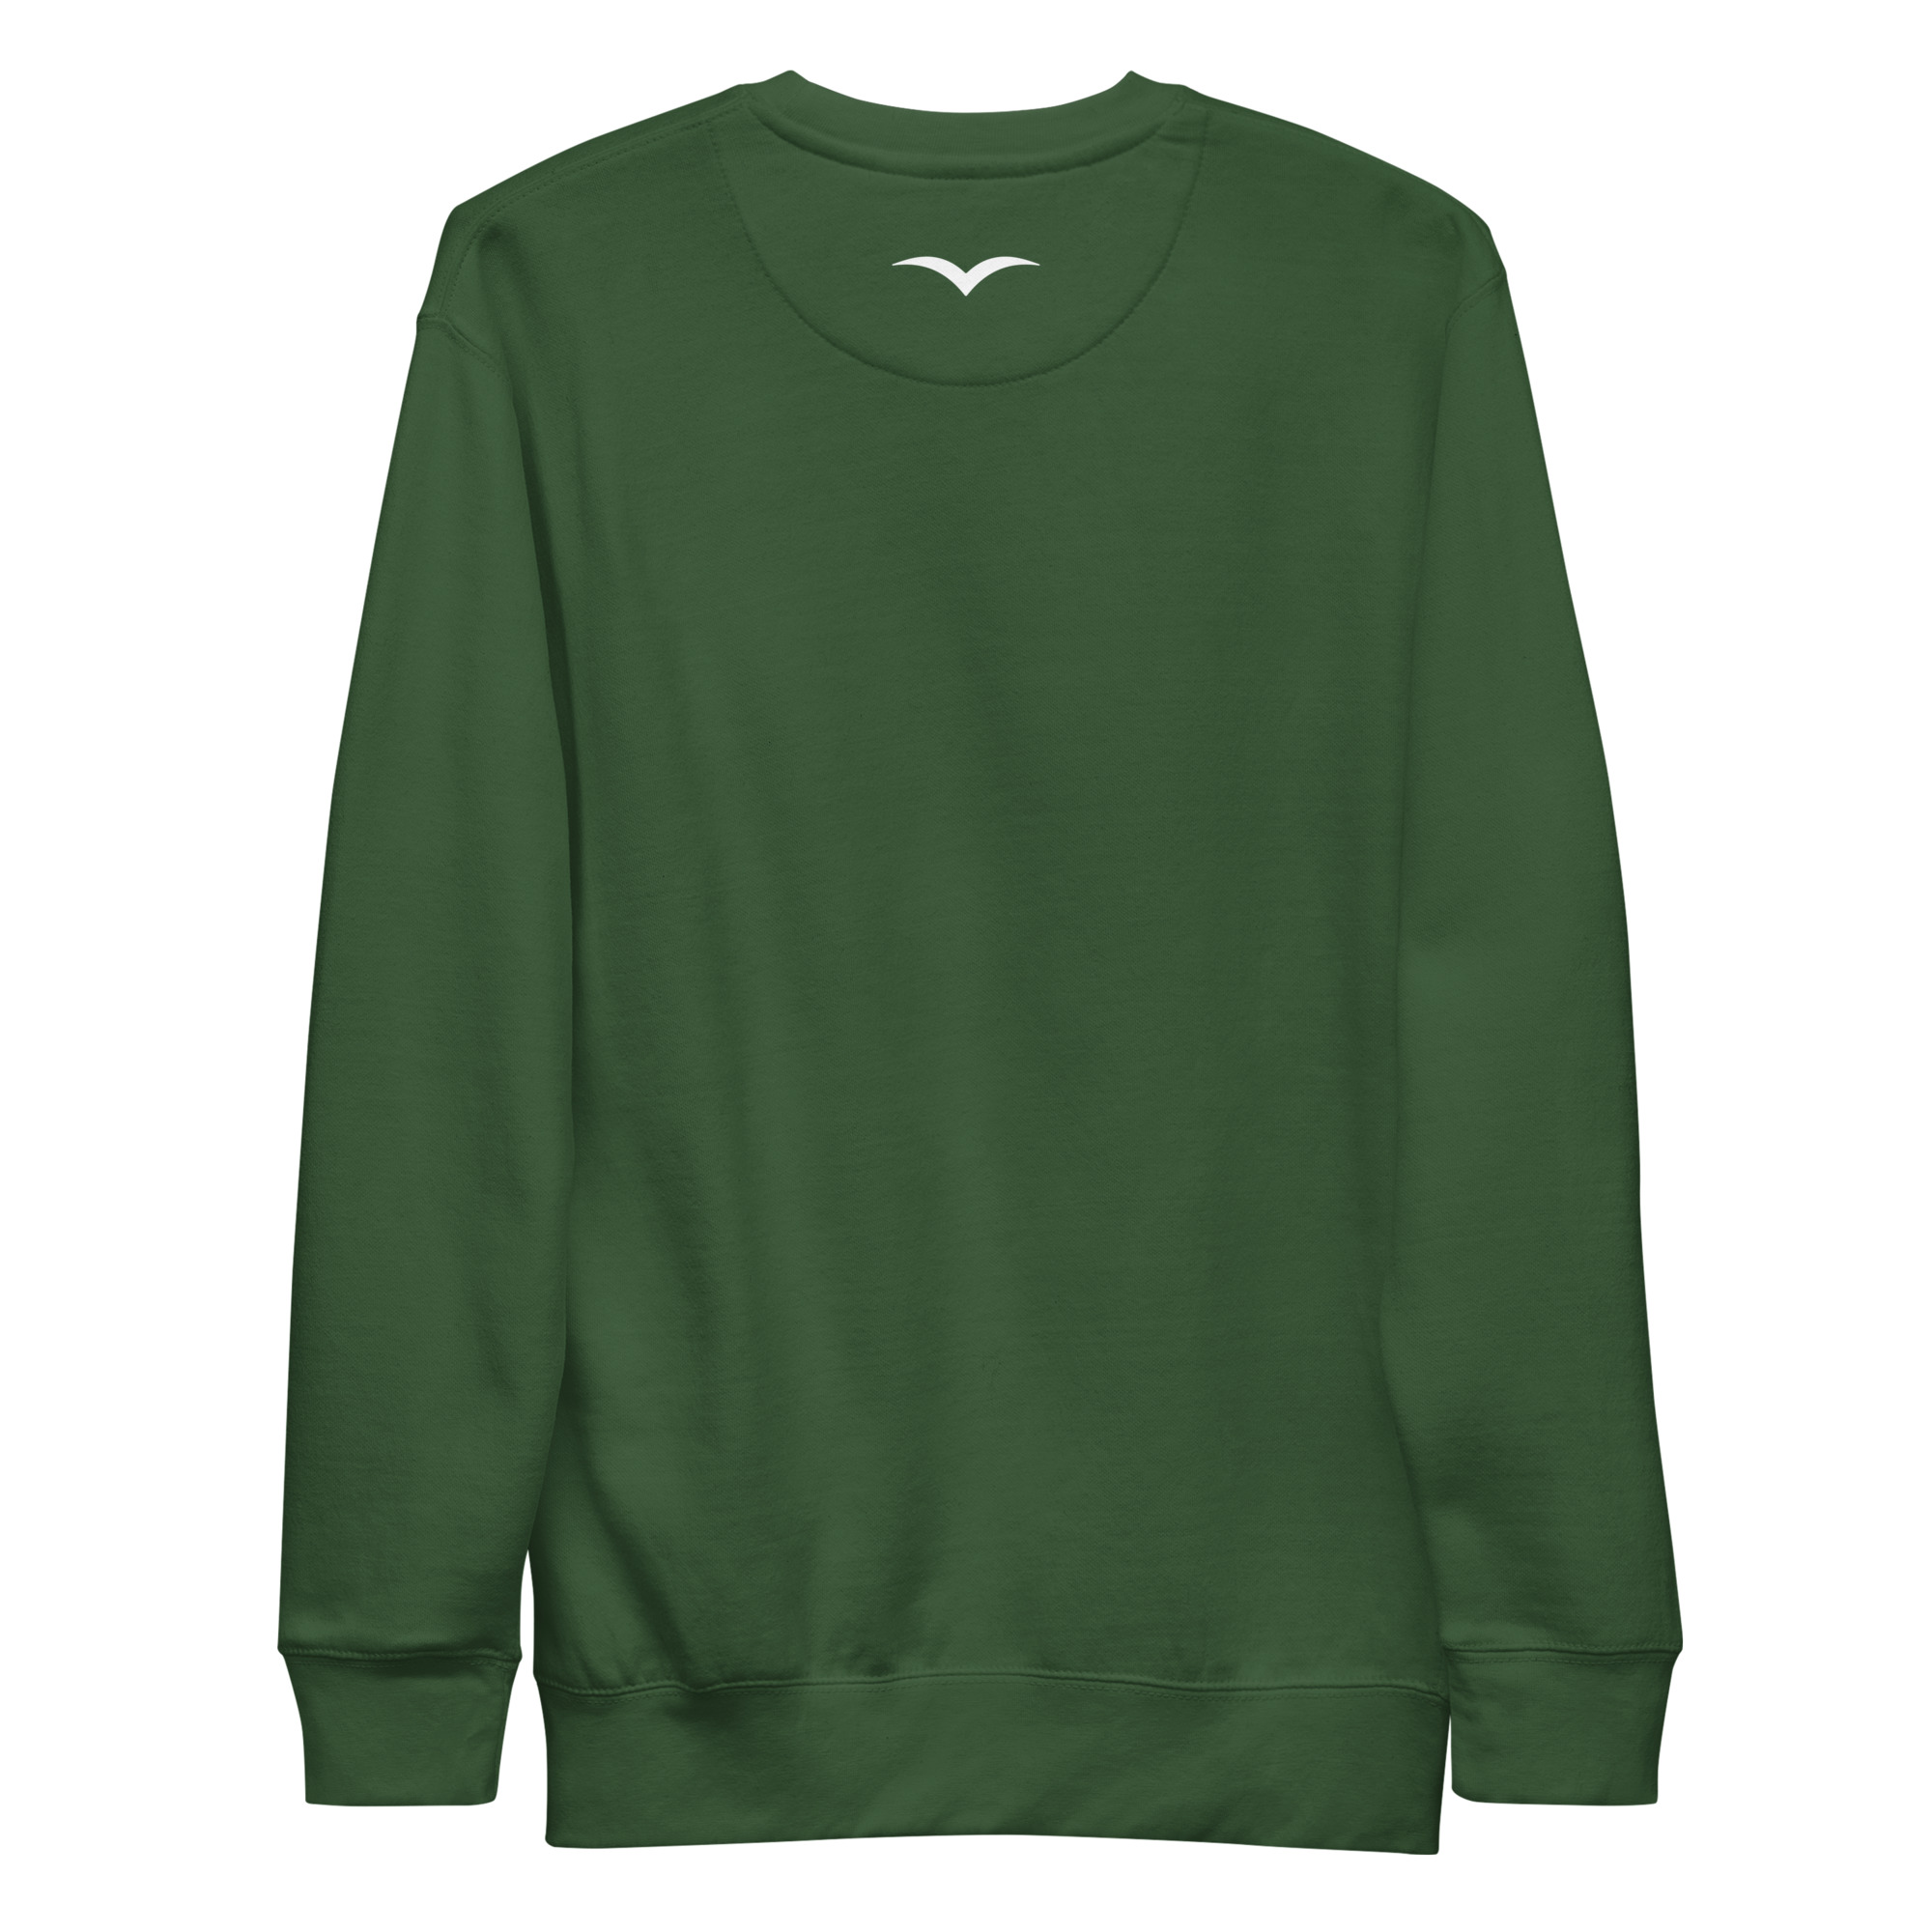 unisex-premium-sweatshirt-forest-green-back-64136cee69c36.jpg